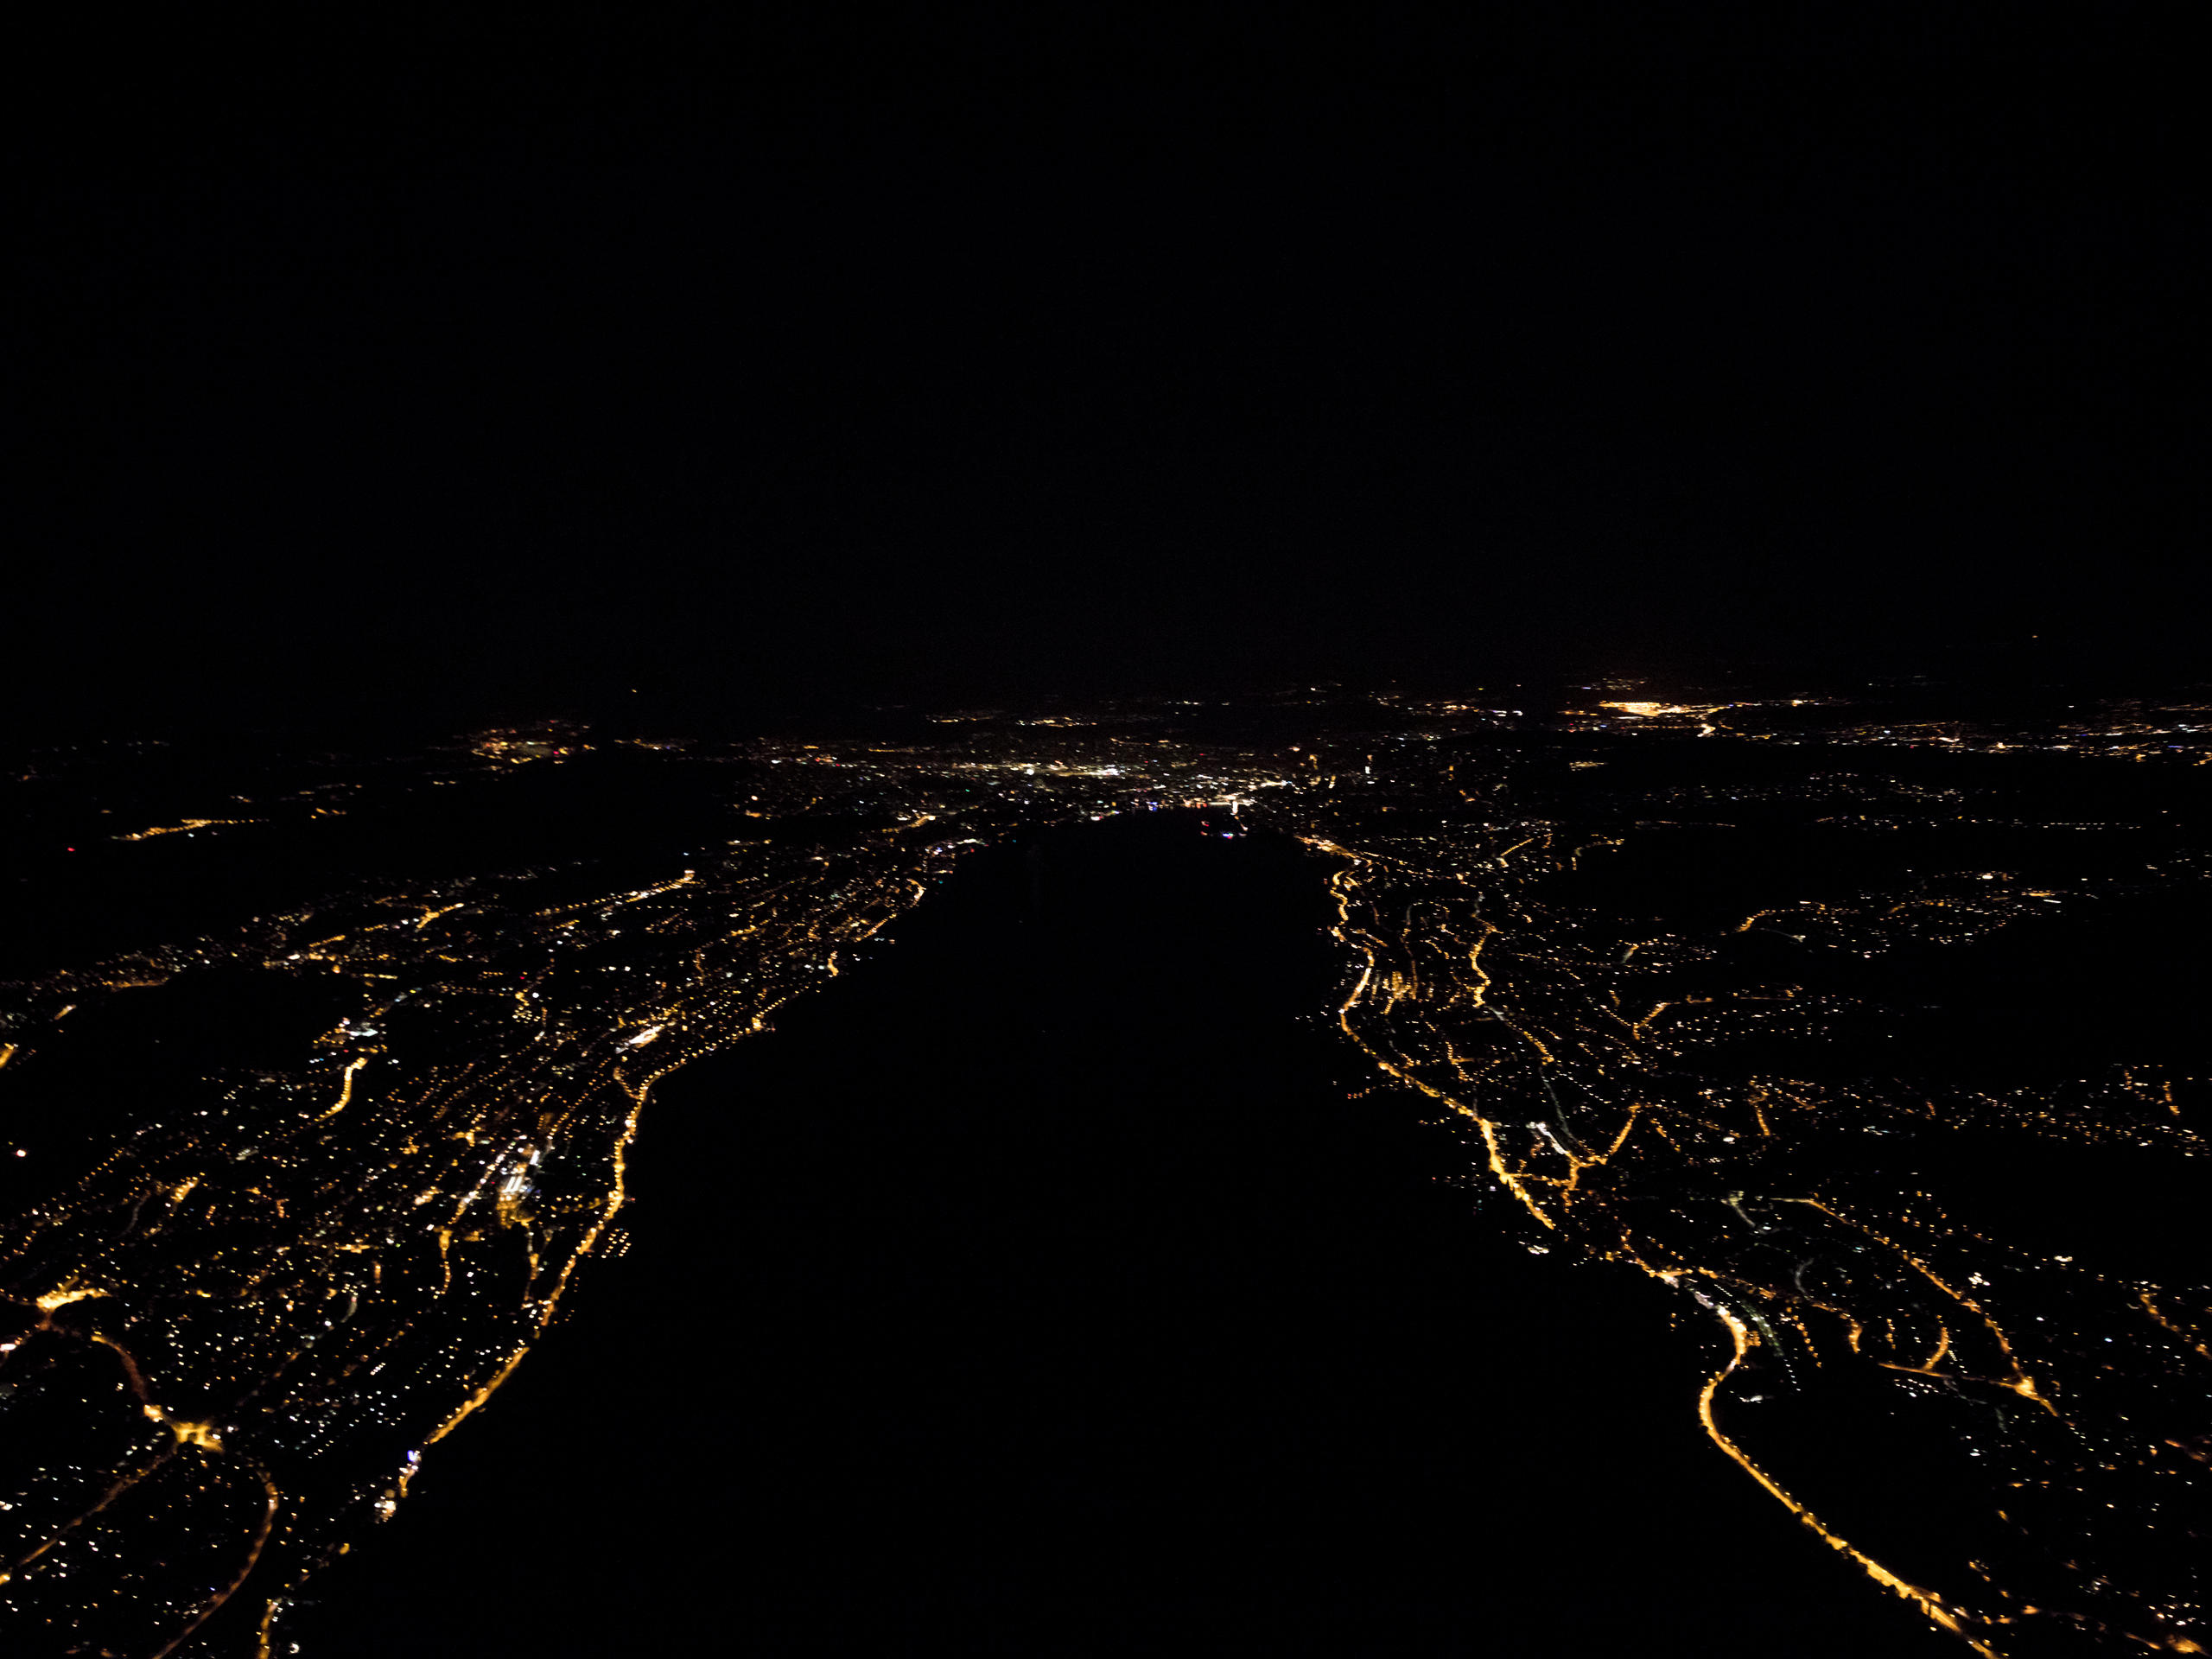 Anflug auf eine Stadt in der Nacht